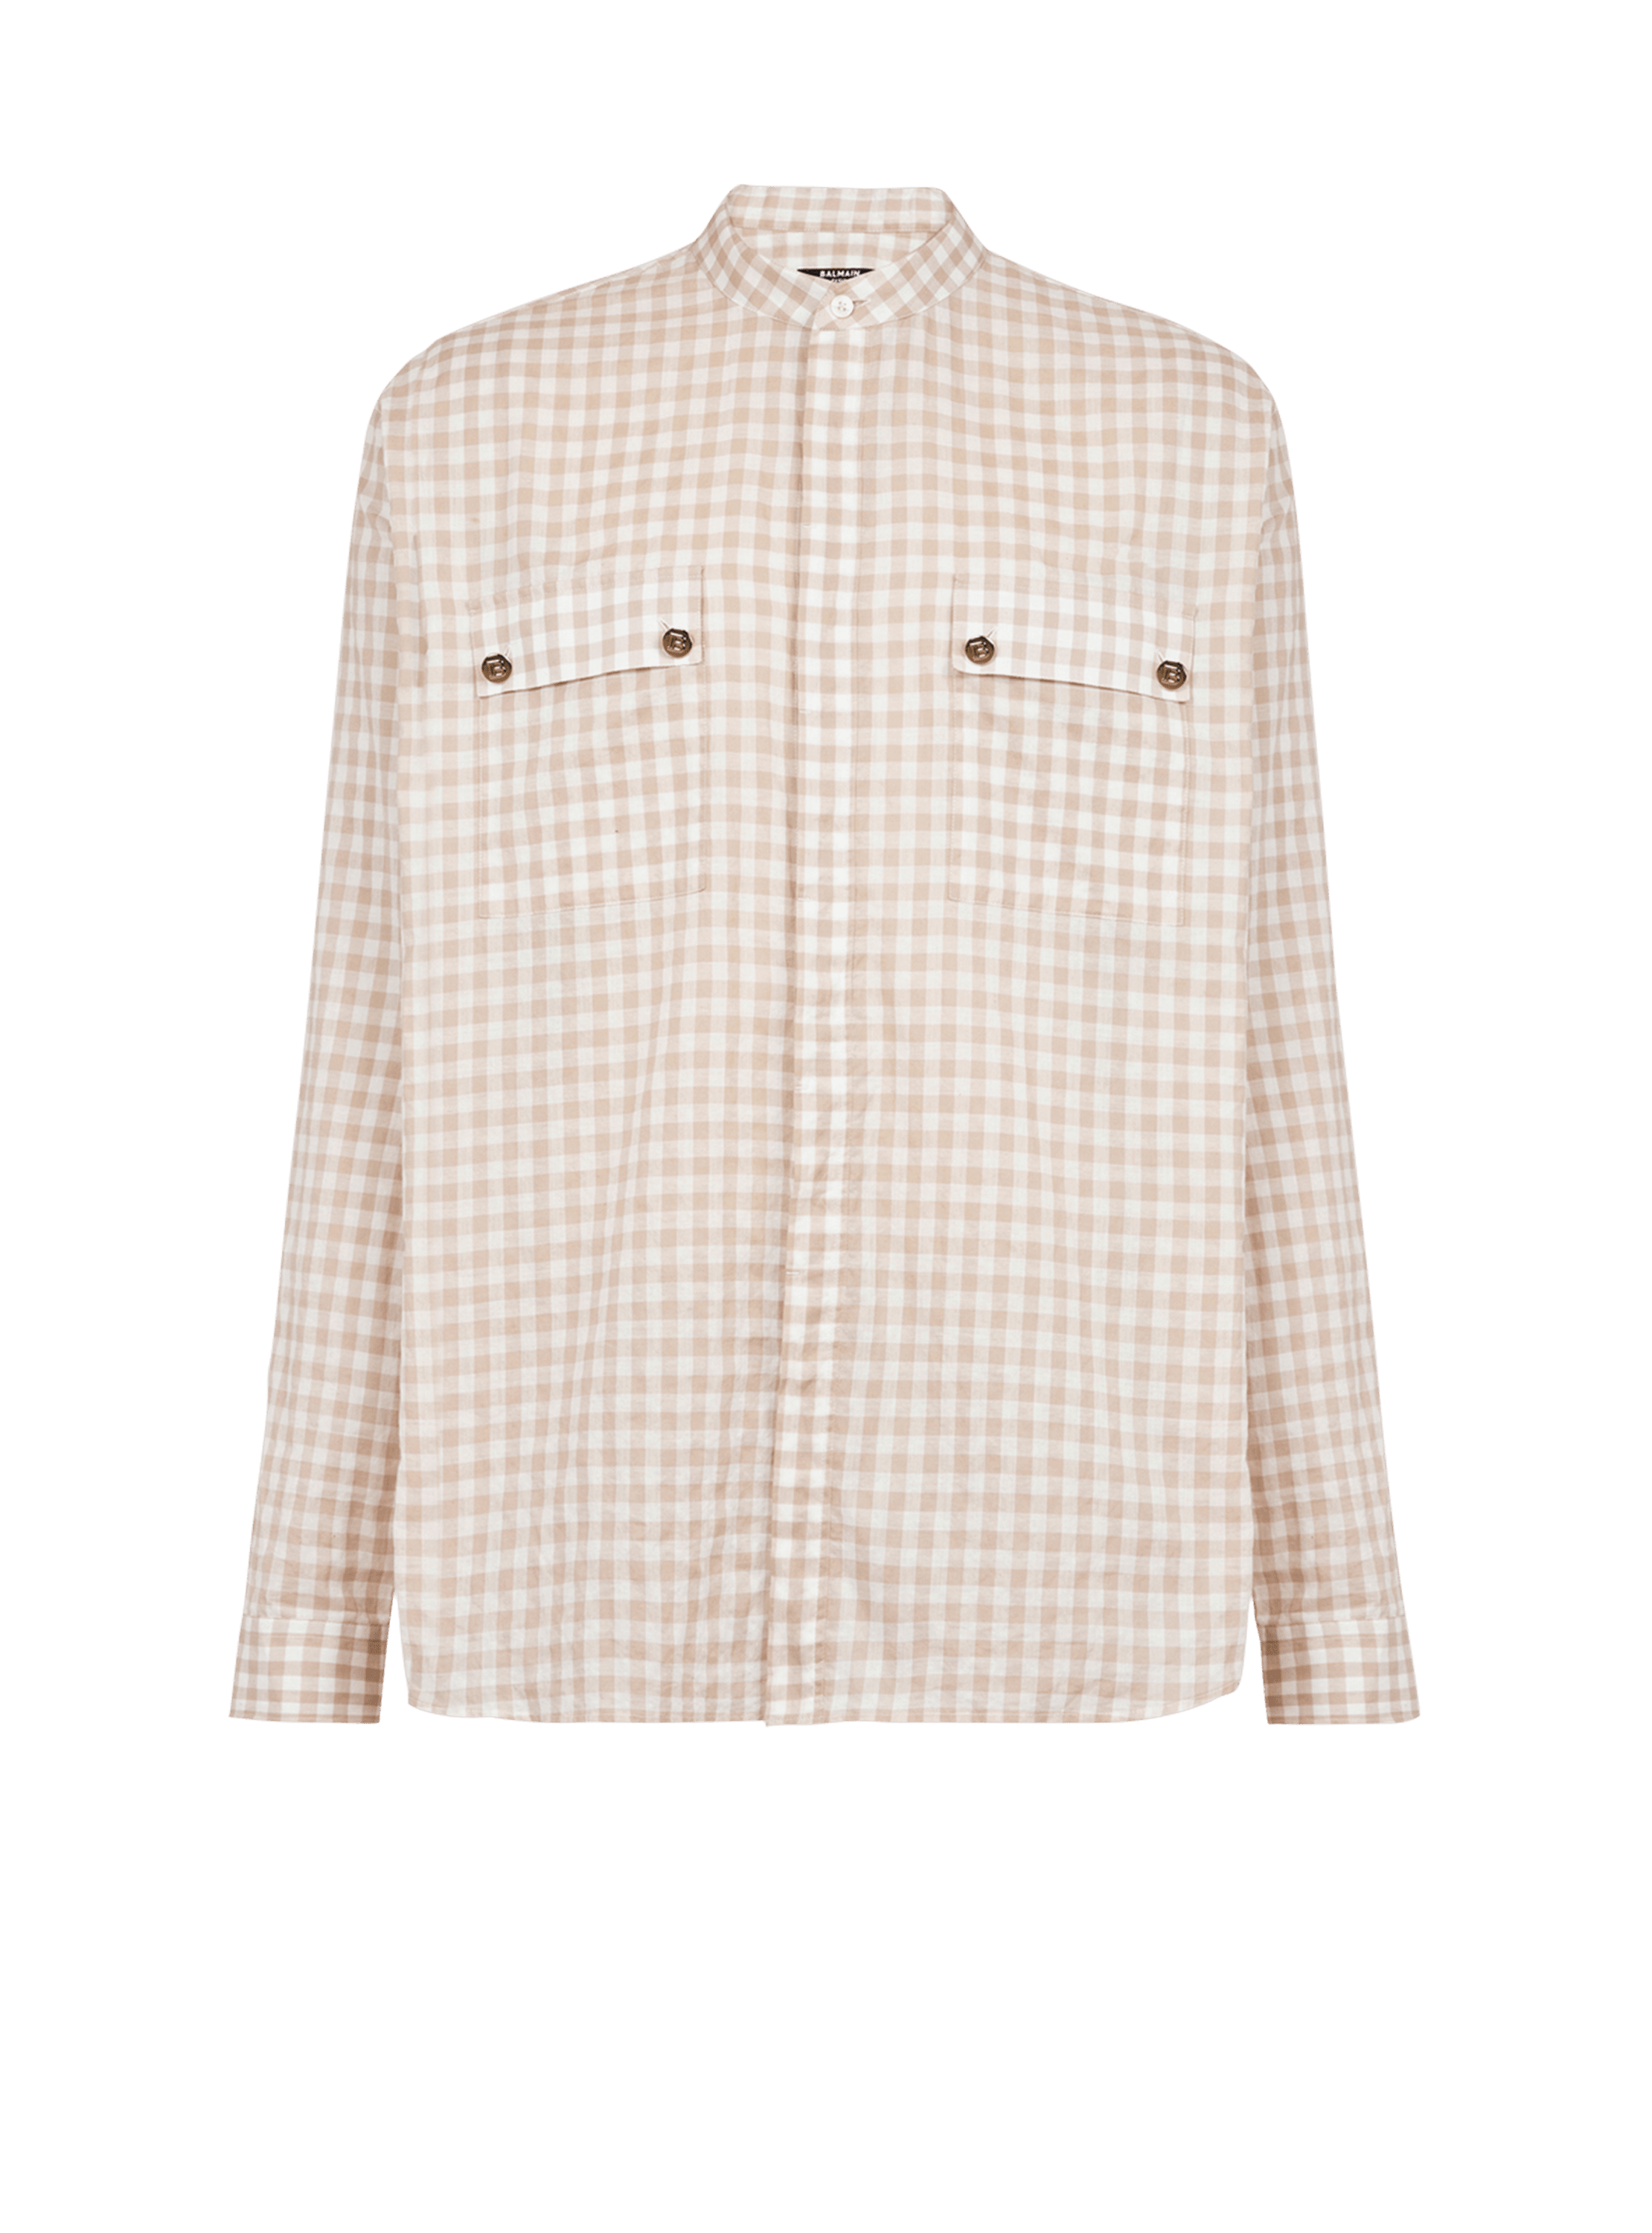 Balmain x Netflix -Cotton shirt